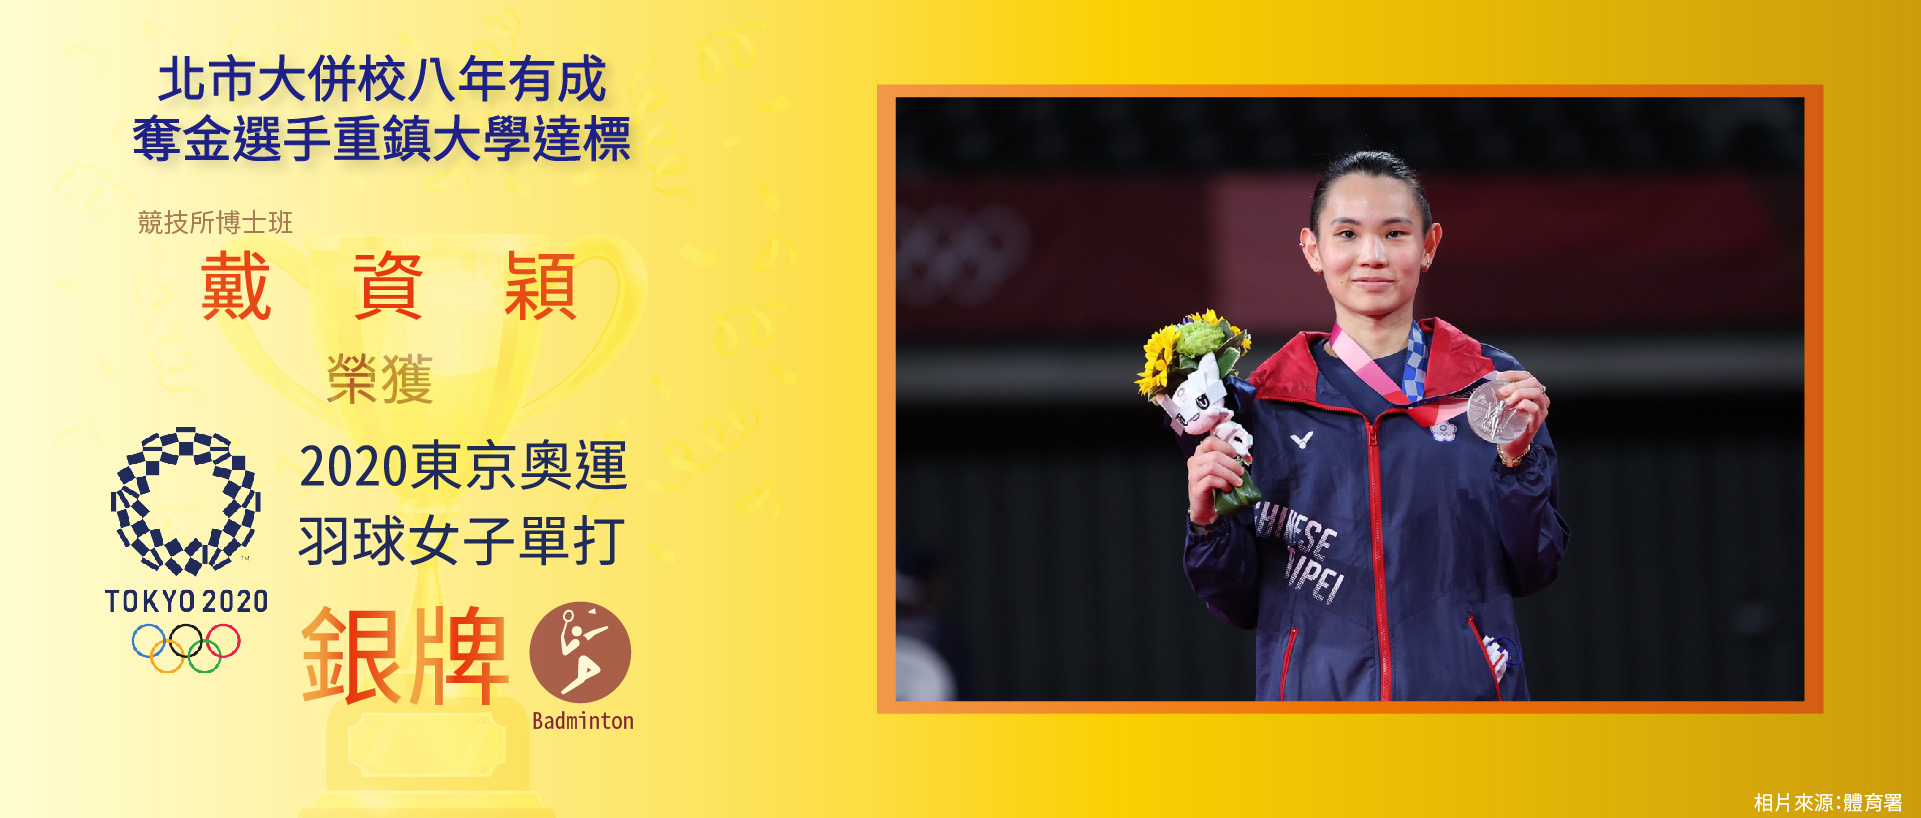 戴資穎 榮獲 2020東京奧運 羽球女子單打 銀牌